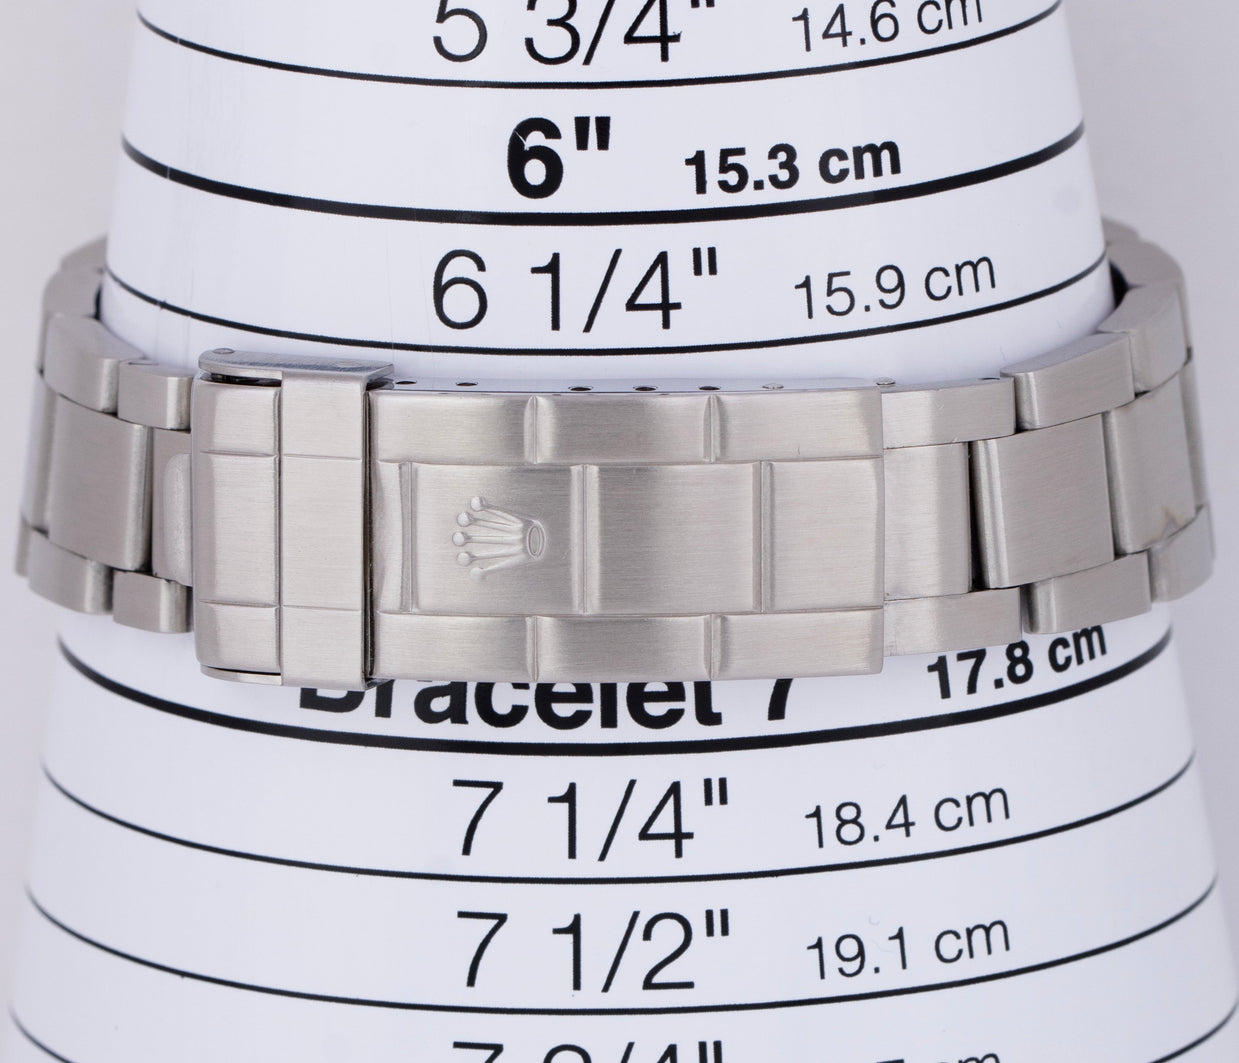 lv bracelet size chart